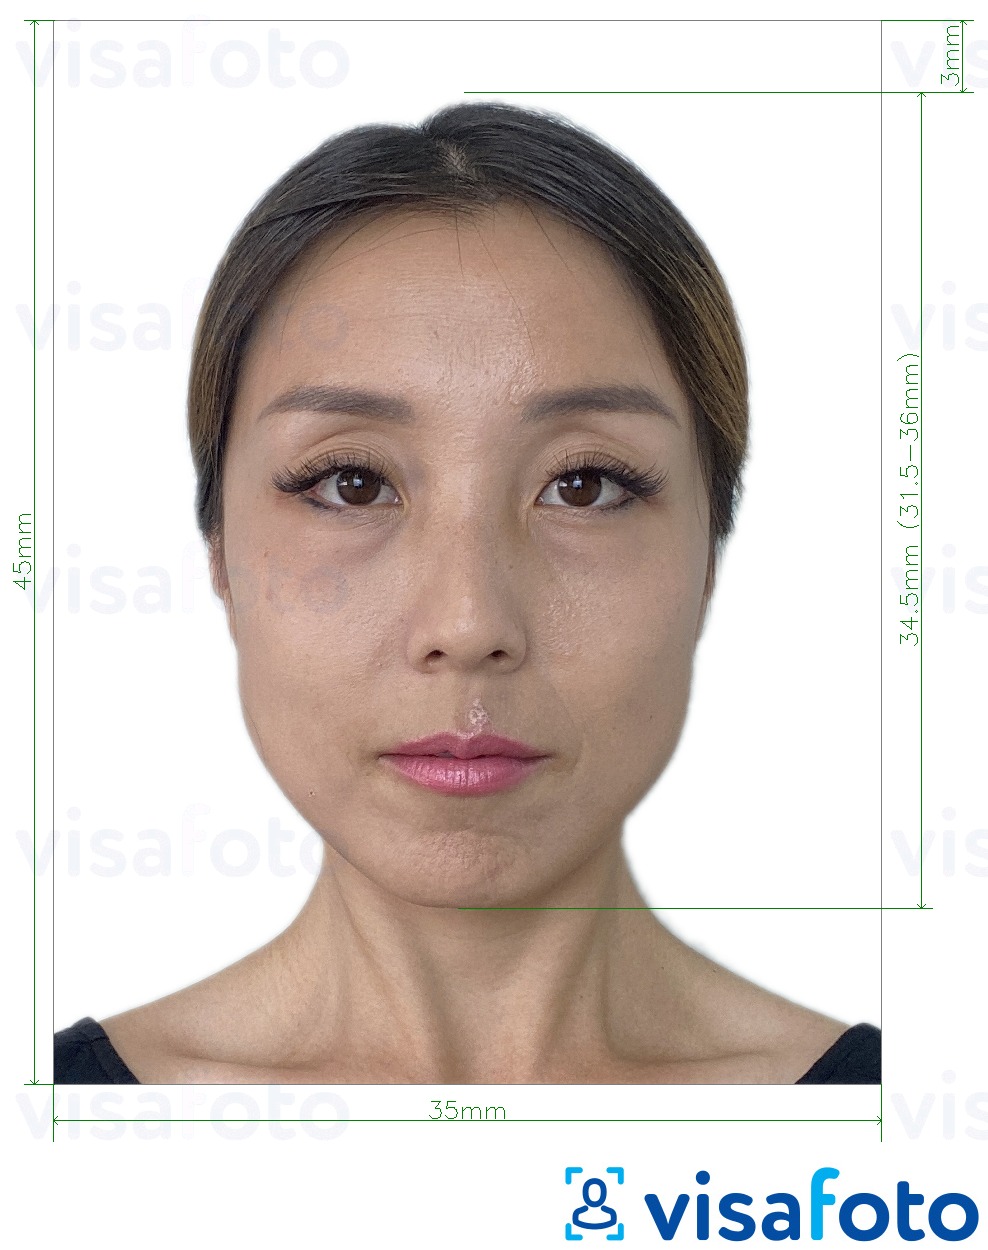 Voorbeeld van foto voor Mongools paspoort 3,5x4,5 cm (35x45 mm) met exacte maatspecificatie